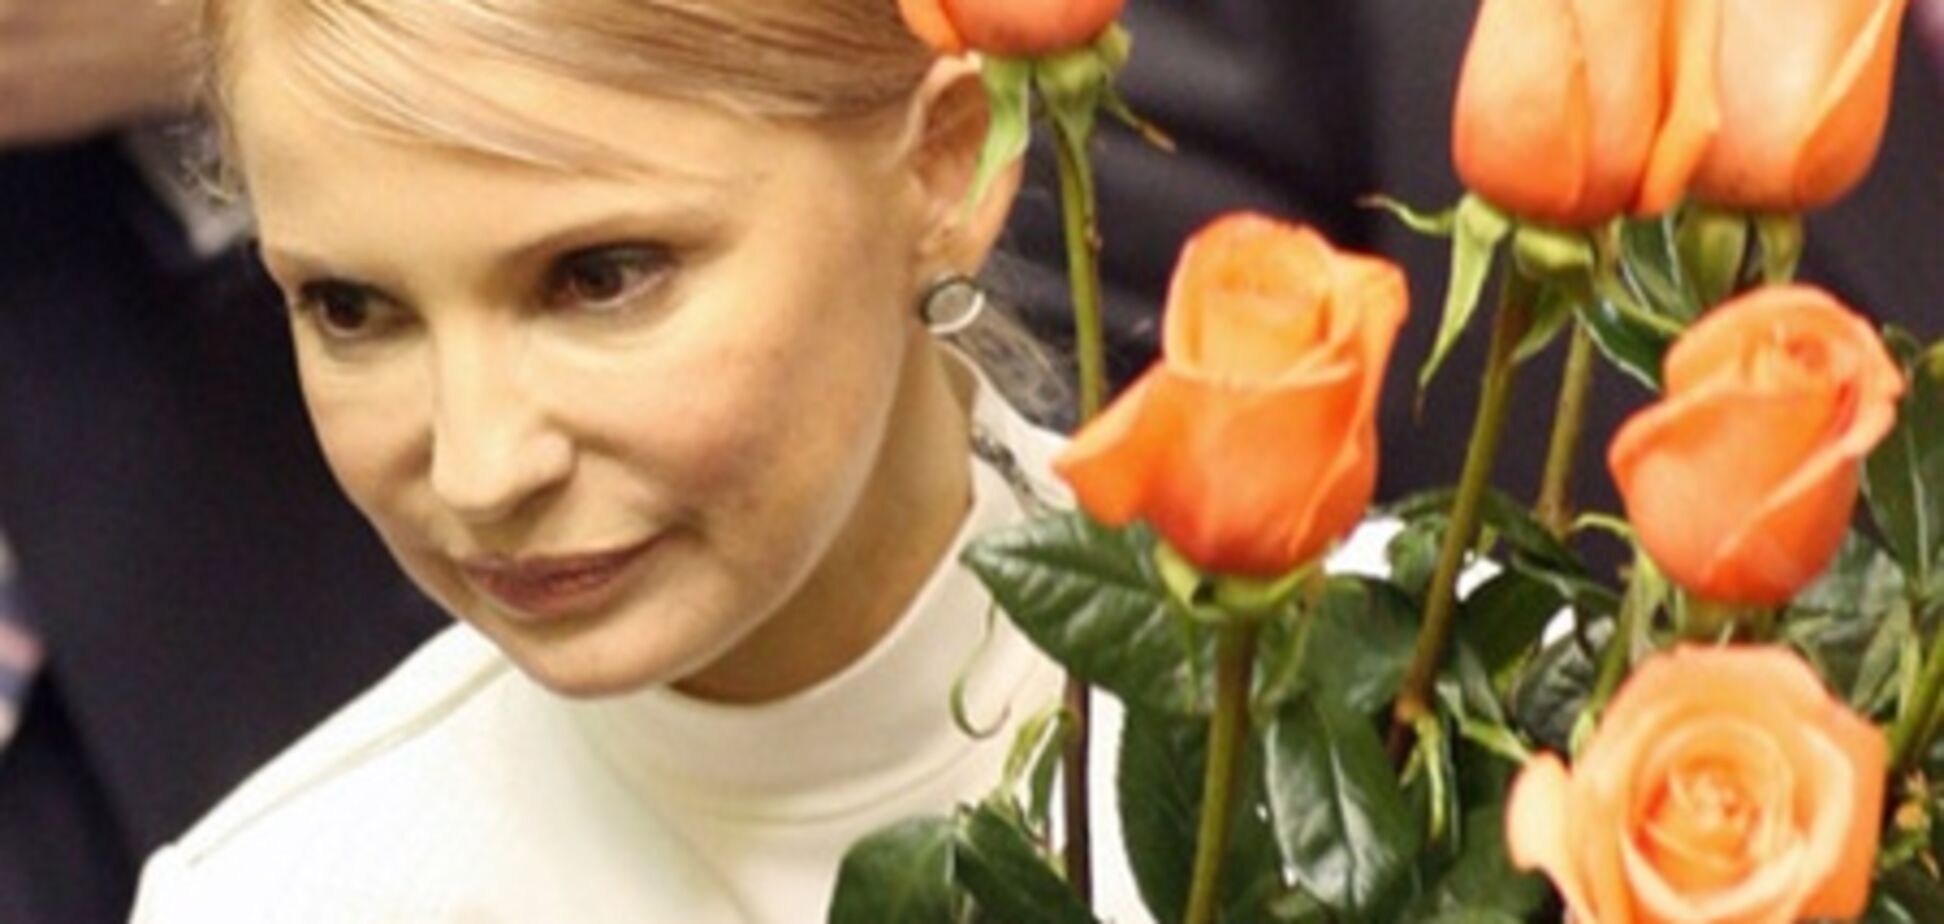 Тимошенко отпразднует день рождения в лучших традициях СИЗО